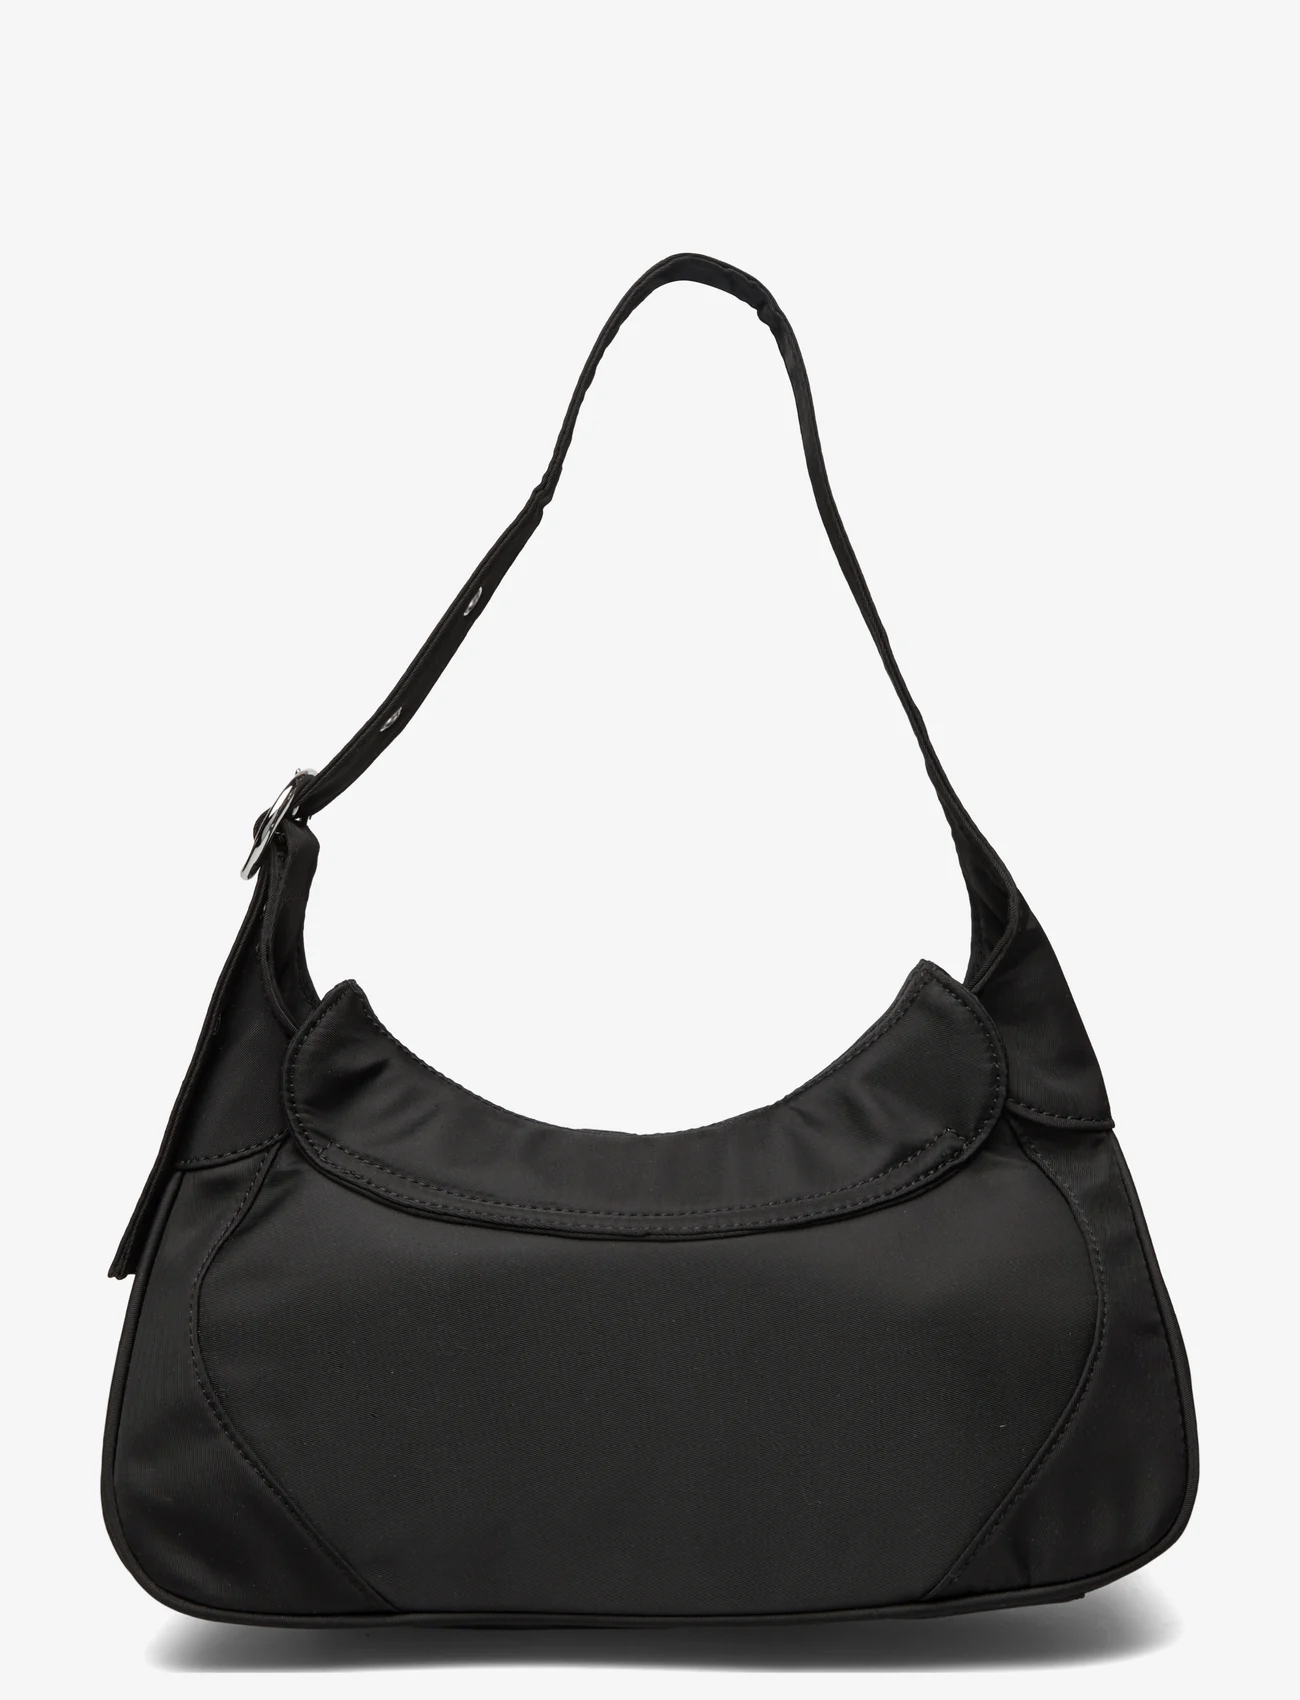 Silfen - Thea - Buckle Shoulder Bag - festmode zu outlet-preisen - black - 1